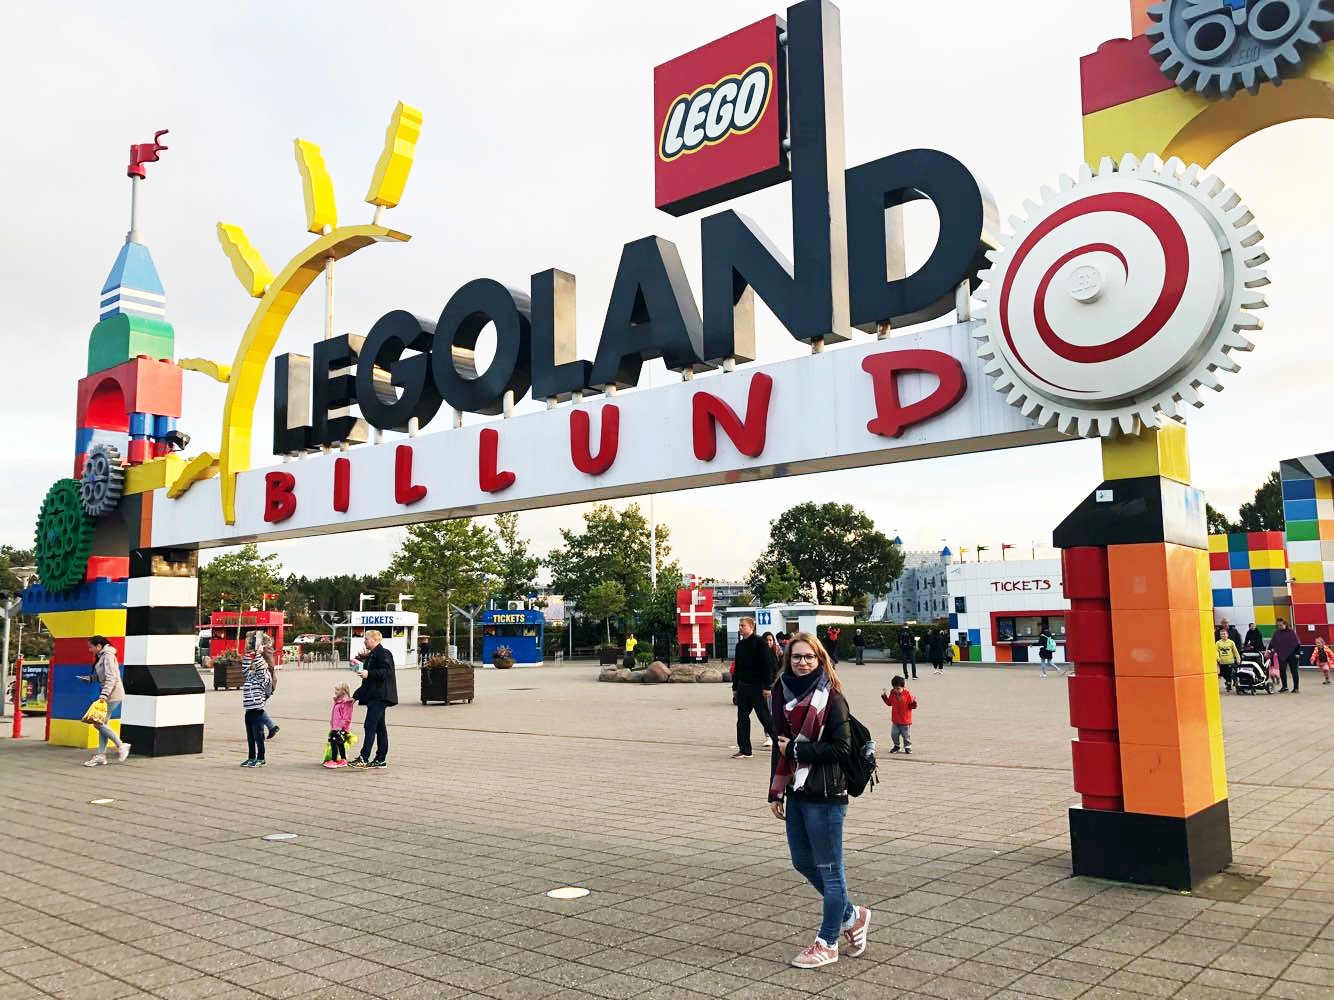 jak zorganizować wyjazd do Legolandu